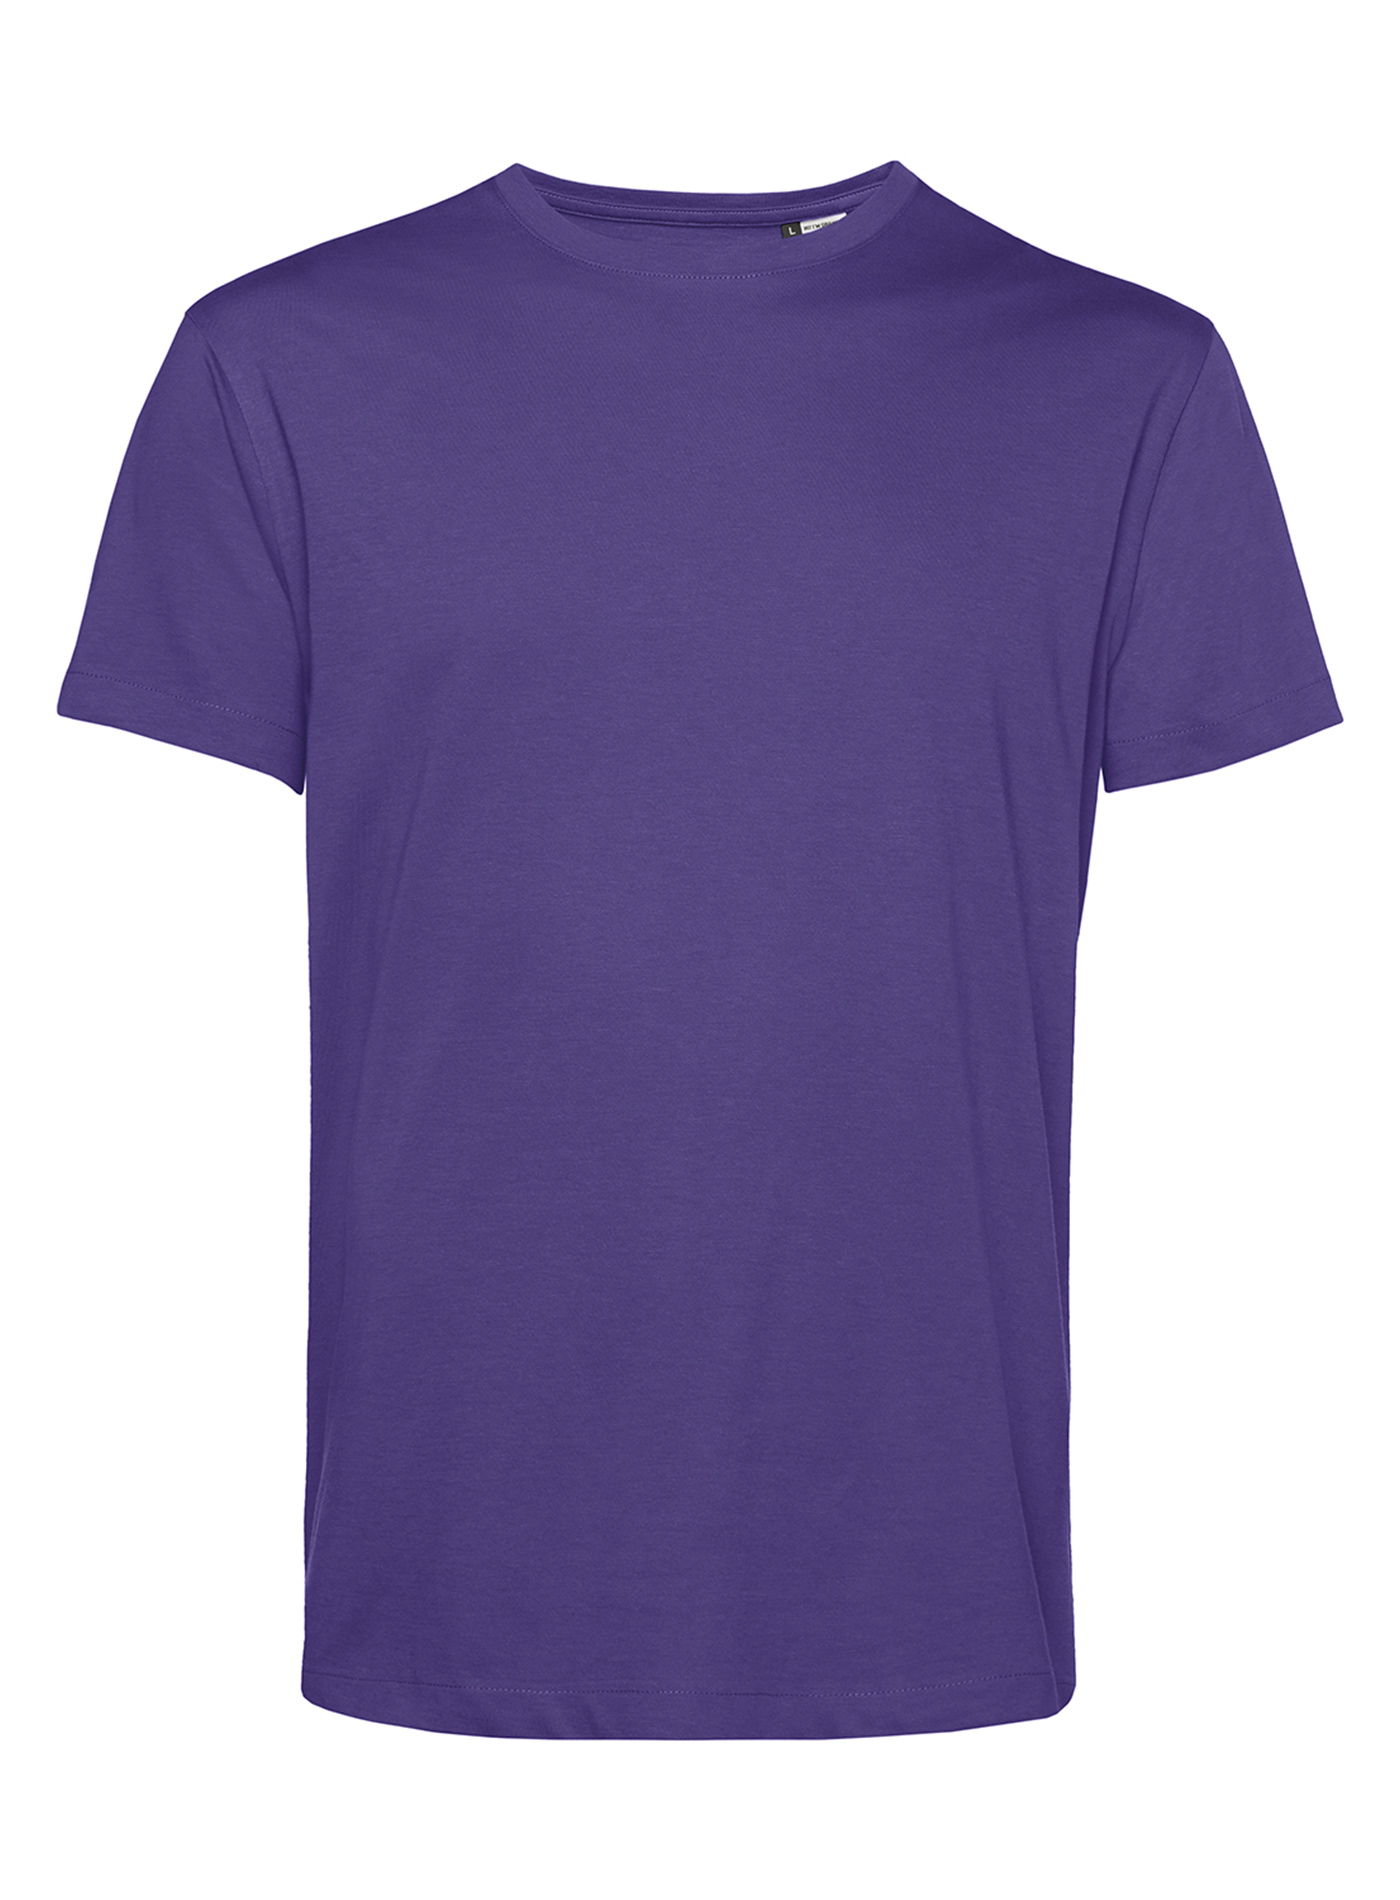 Pánské tričko B&C Collection Organic - Tmavě fialová XL